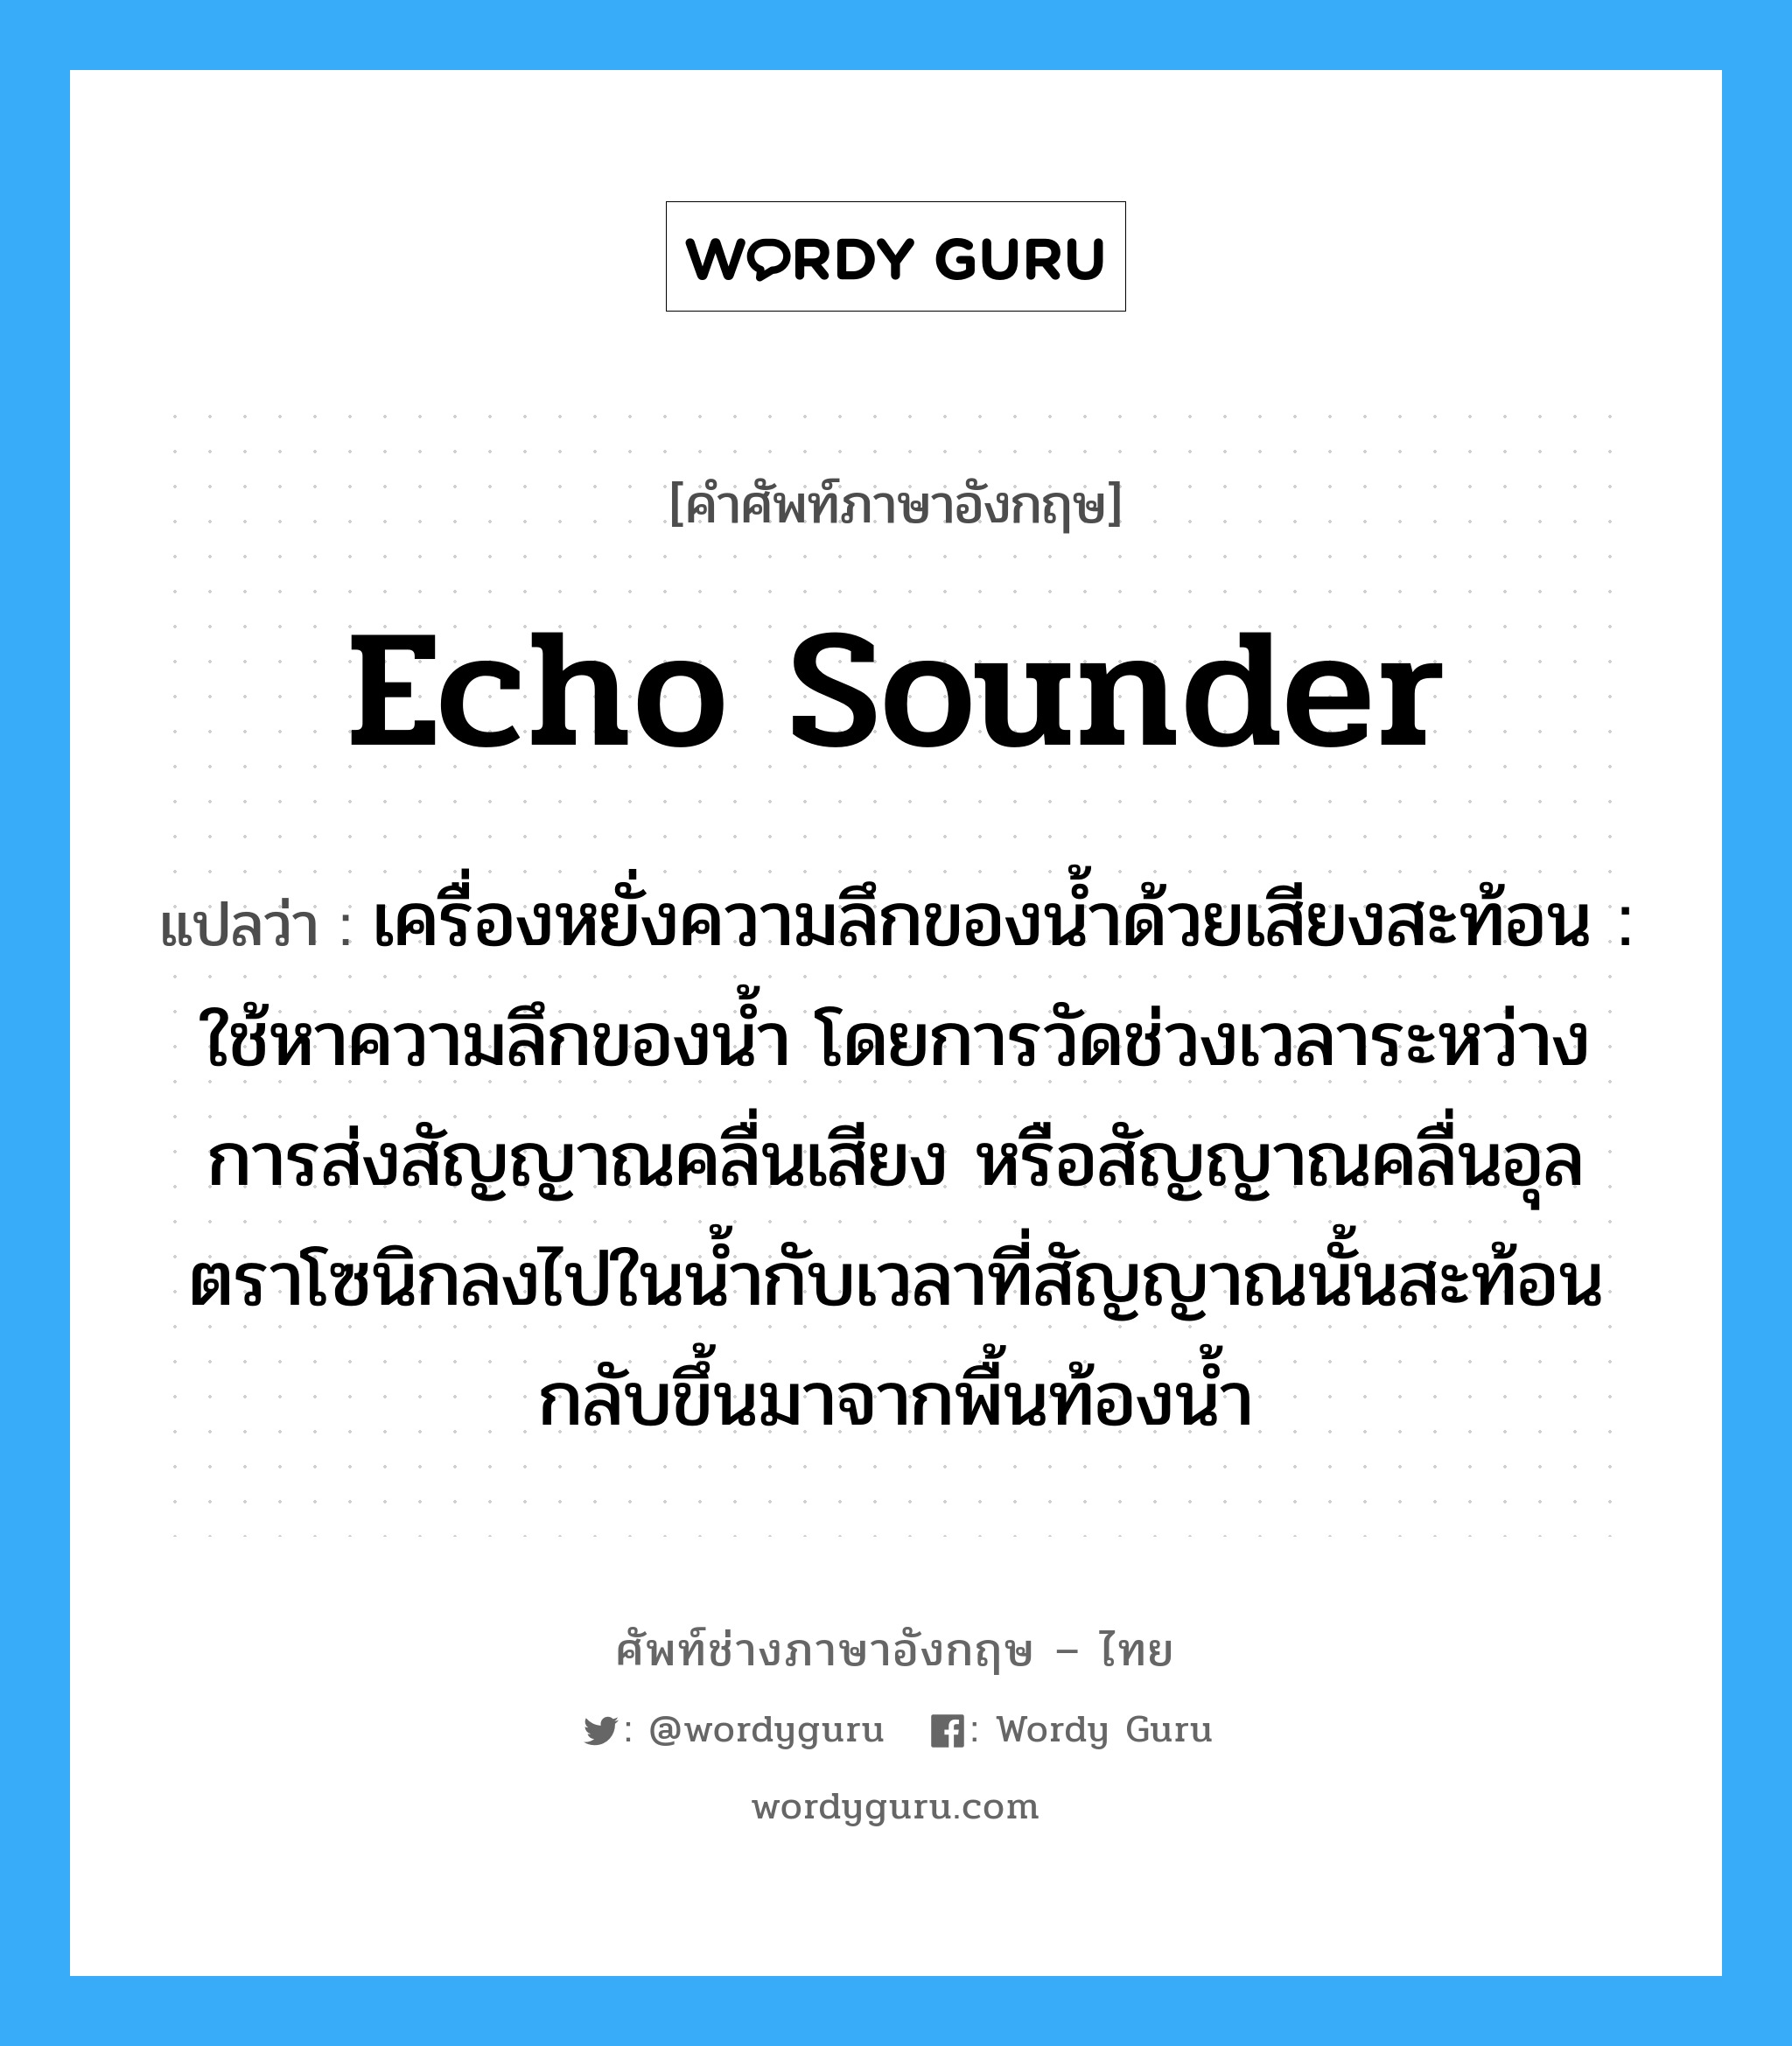 echo sounder แปลว่า?, คำศัพท์ช่างภาษาอังกฤษ - ไทย echo sounder คำศัพท์ภาษาอังกฤษ echo sounder แปลว่า เครื่องหยั่งความลึกของน้ำด้วยเสียงสะท้อน : ใช้หาความลึกของน้ำ โดยการวัดช่วงเวลาระหว่างการส่งสัญญาณคลื่นเสียง หรือสัญญาณคลื่นอุลตราโซนิกลงไปในน้ำกับเวลาที่สัญญาณนั้นสะท้อนกลับขึ้นมาจากพื้นท้องน้ำ